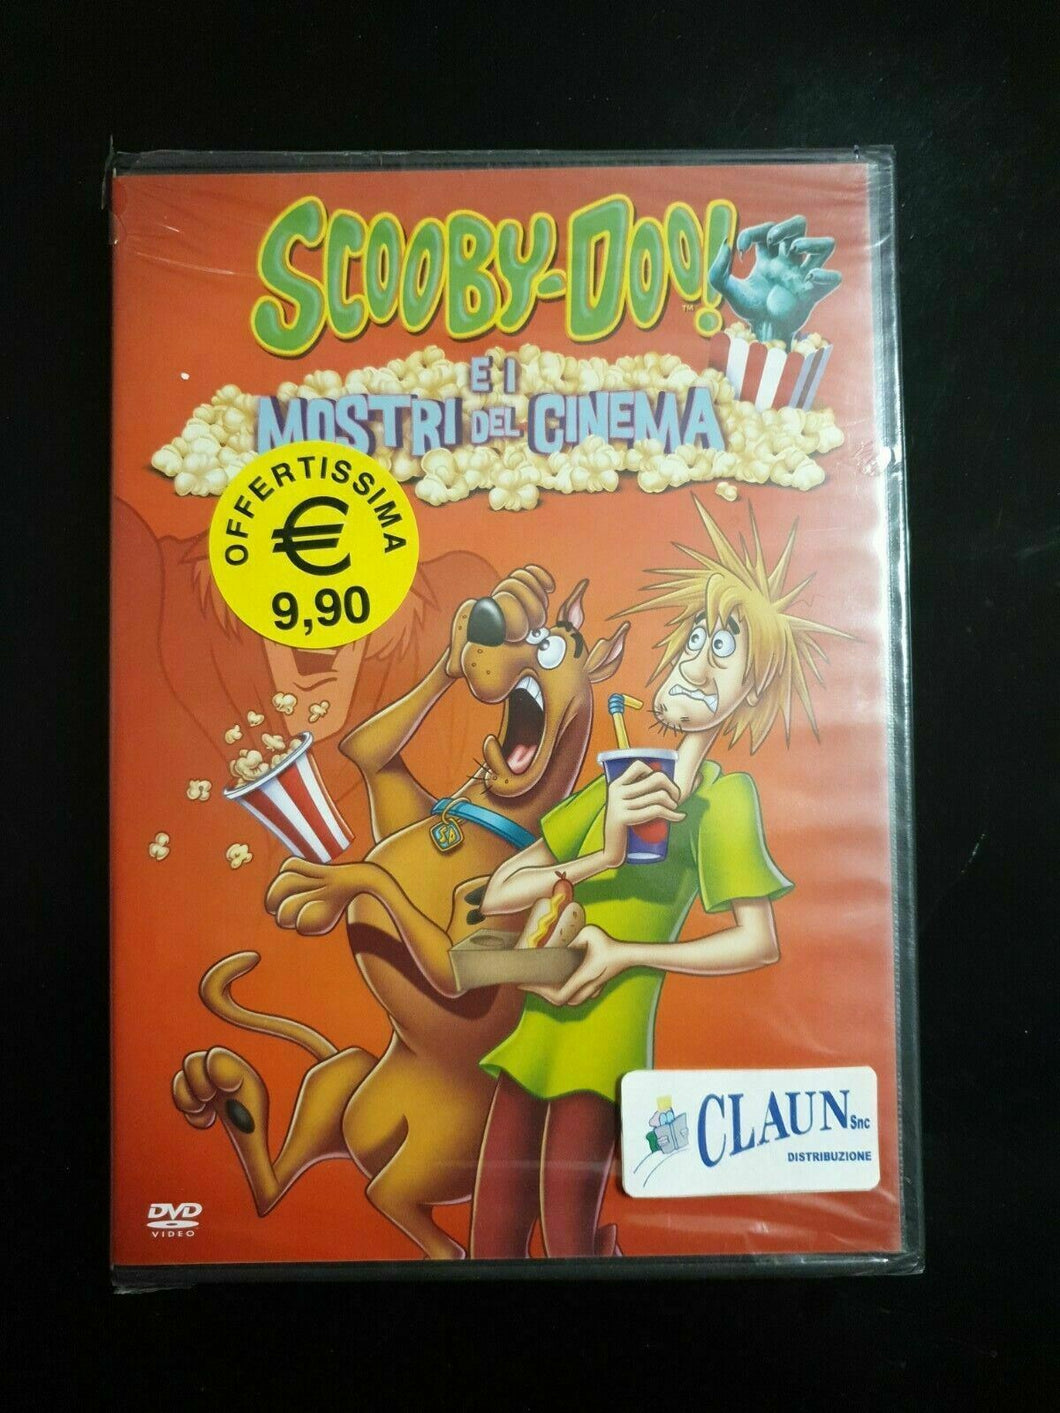 Scooby-Doo e i Mostri del Cinema (2012) DVD Nuovo